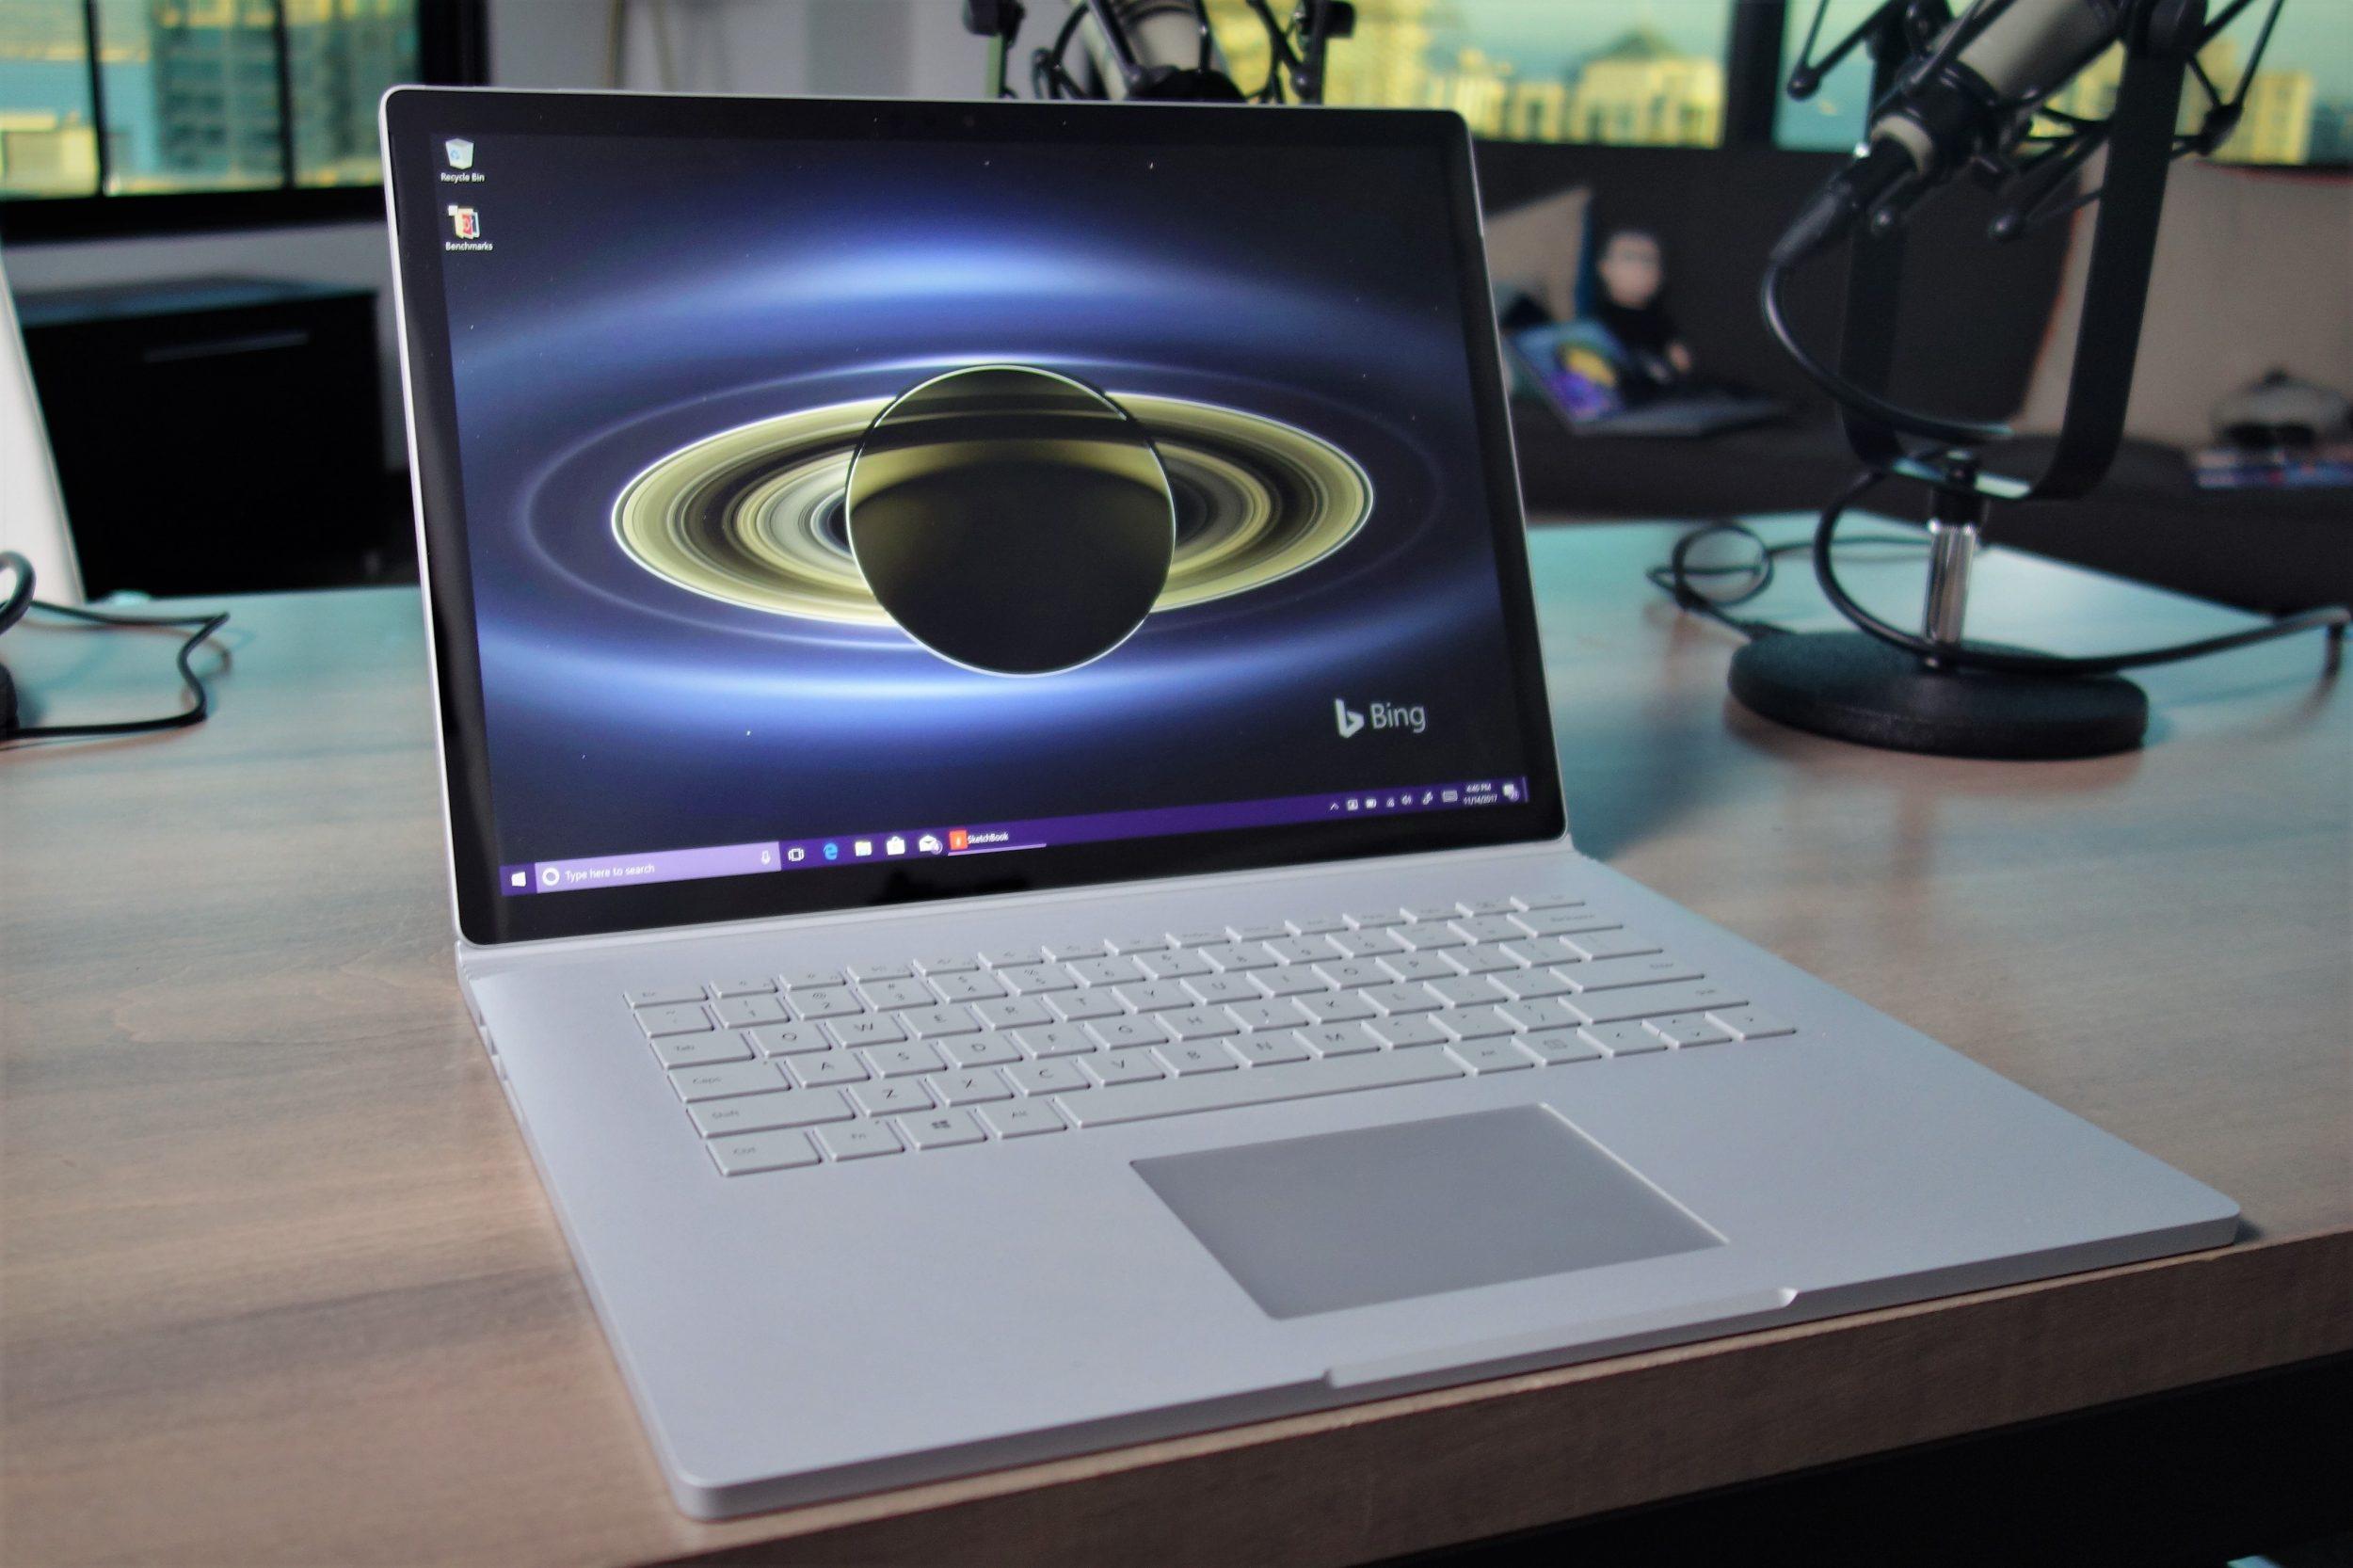 نقد و بررسی سرفیس بوک 2 نسخه 15 اینچ - Microsoft Surface Book 2